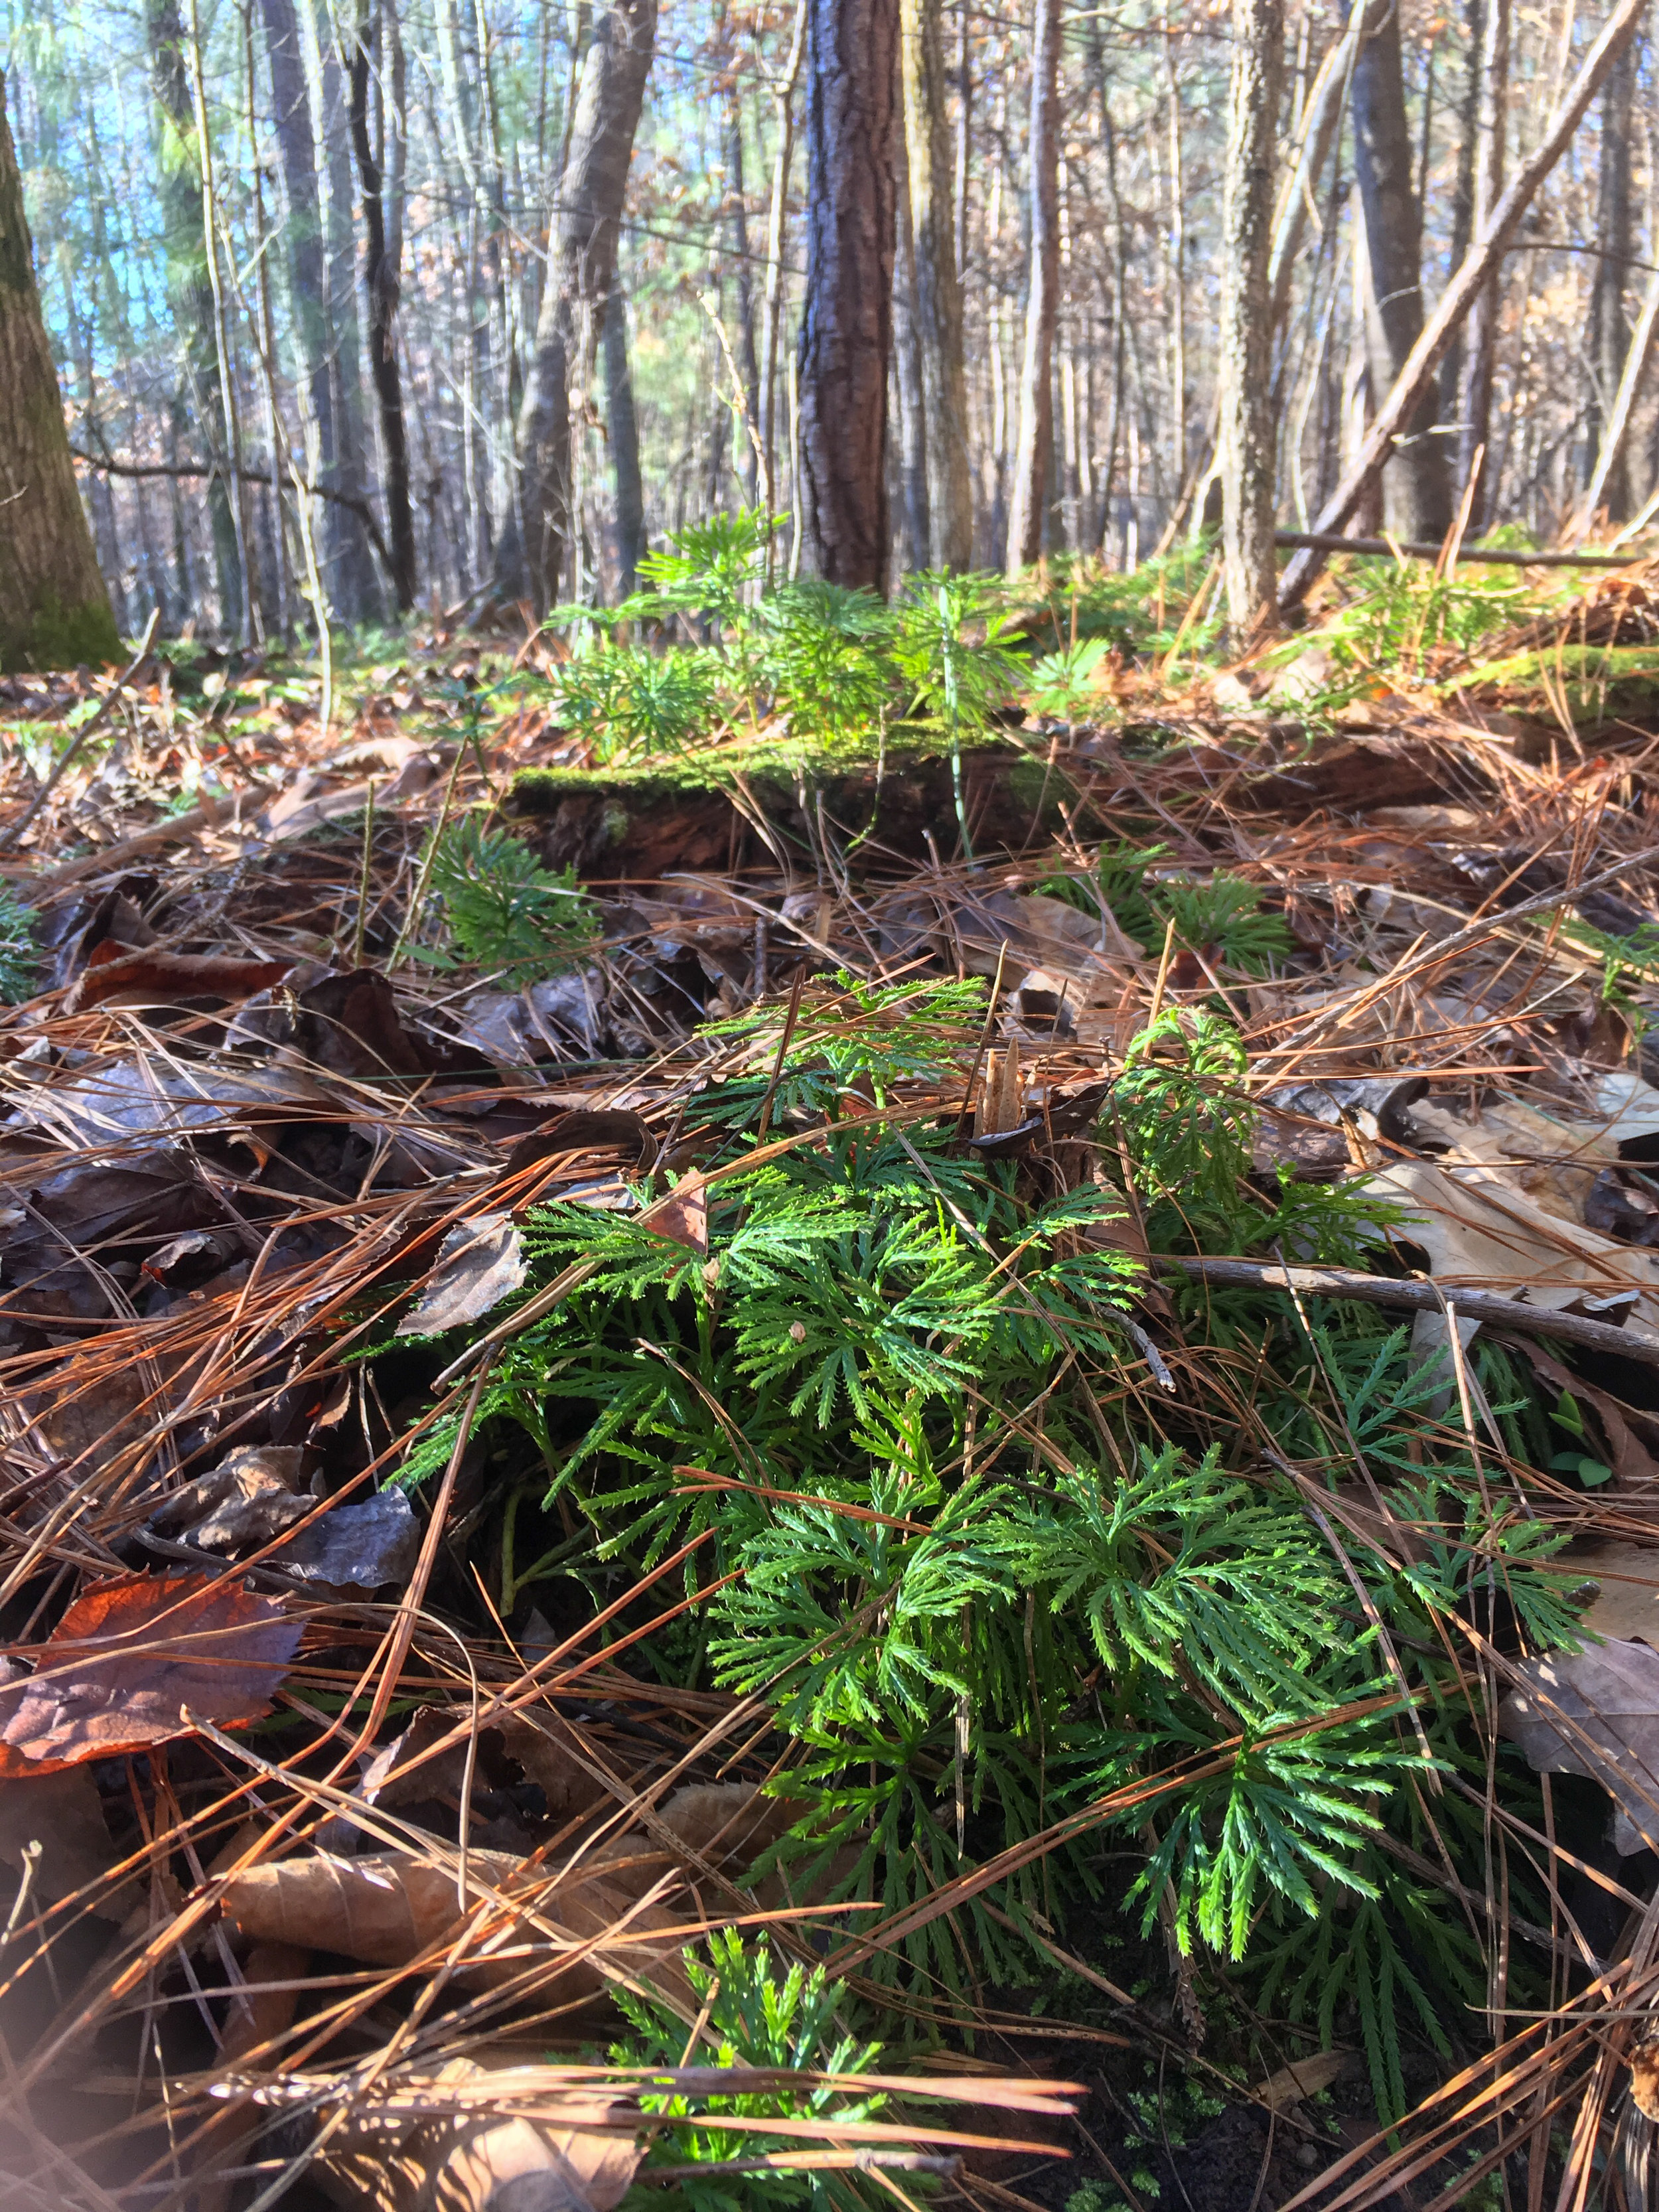 Ground cedar, January 25, 2019